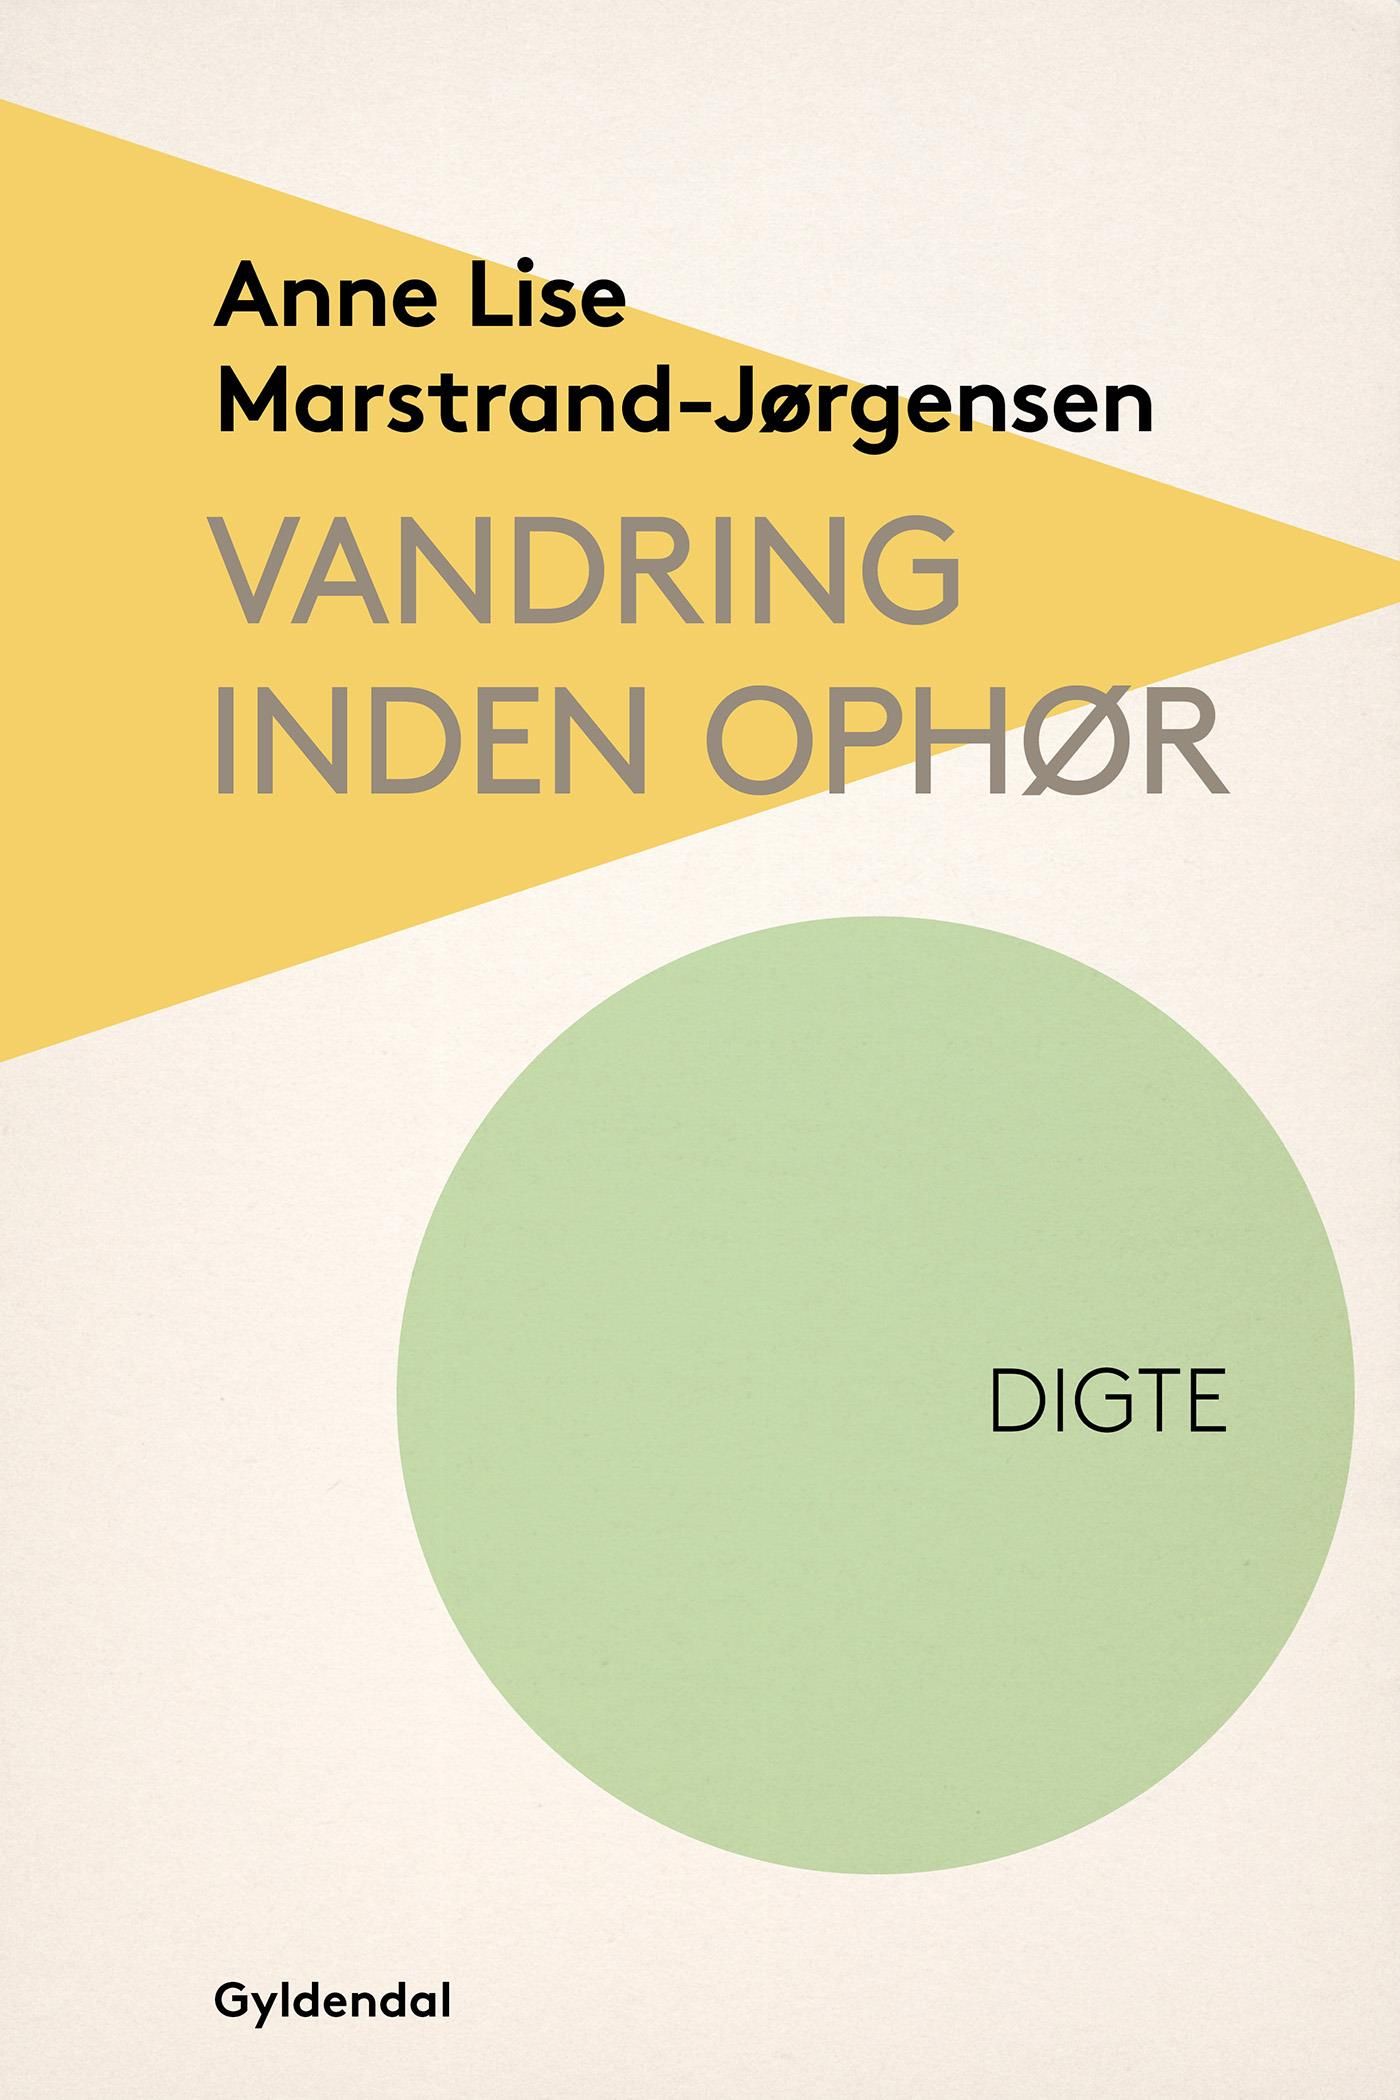 Vandring inden ophør, e-bog af Anne Lise Marstrand-Jørgensen